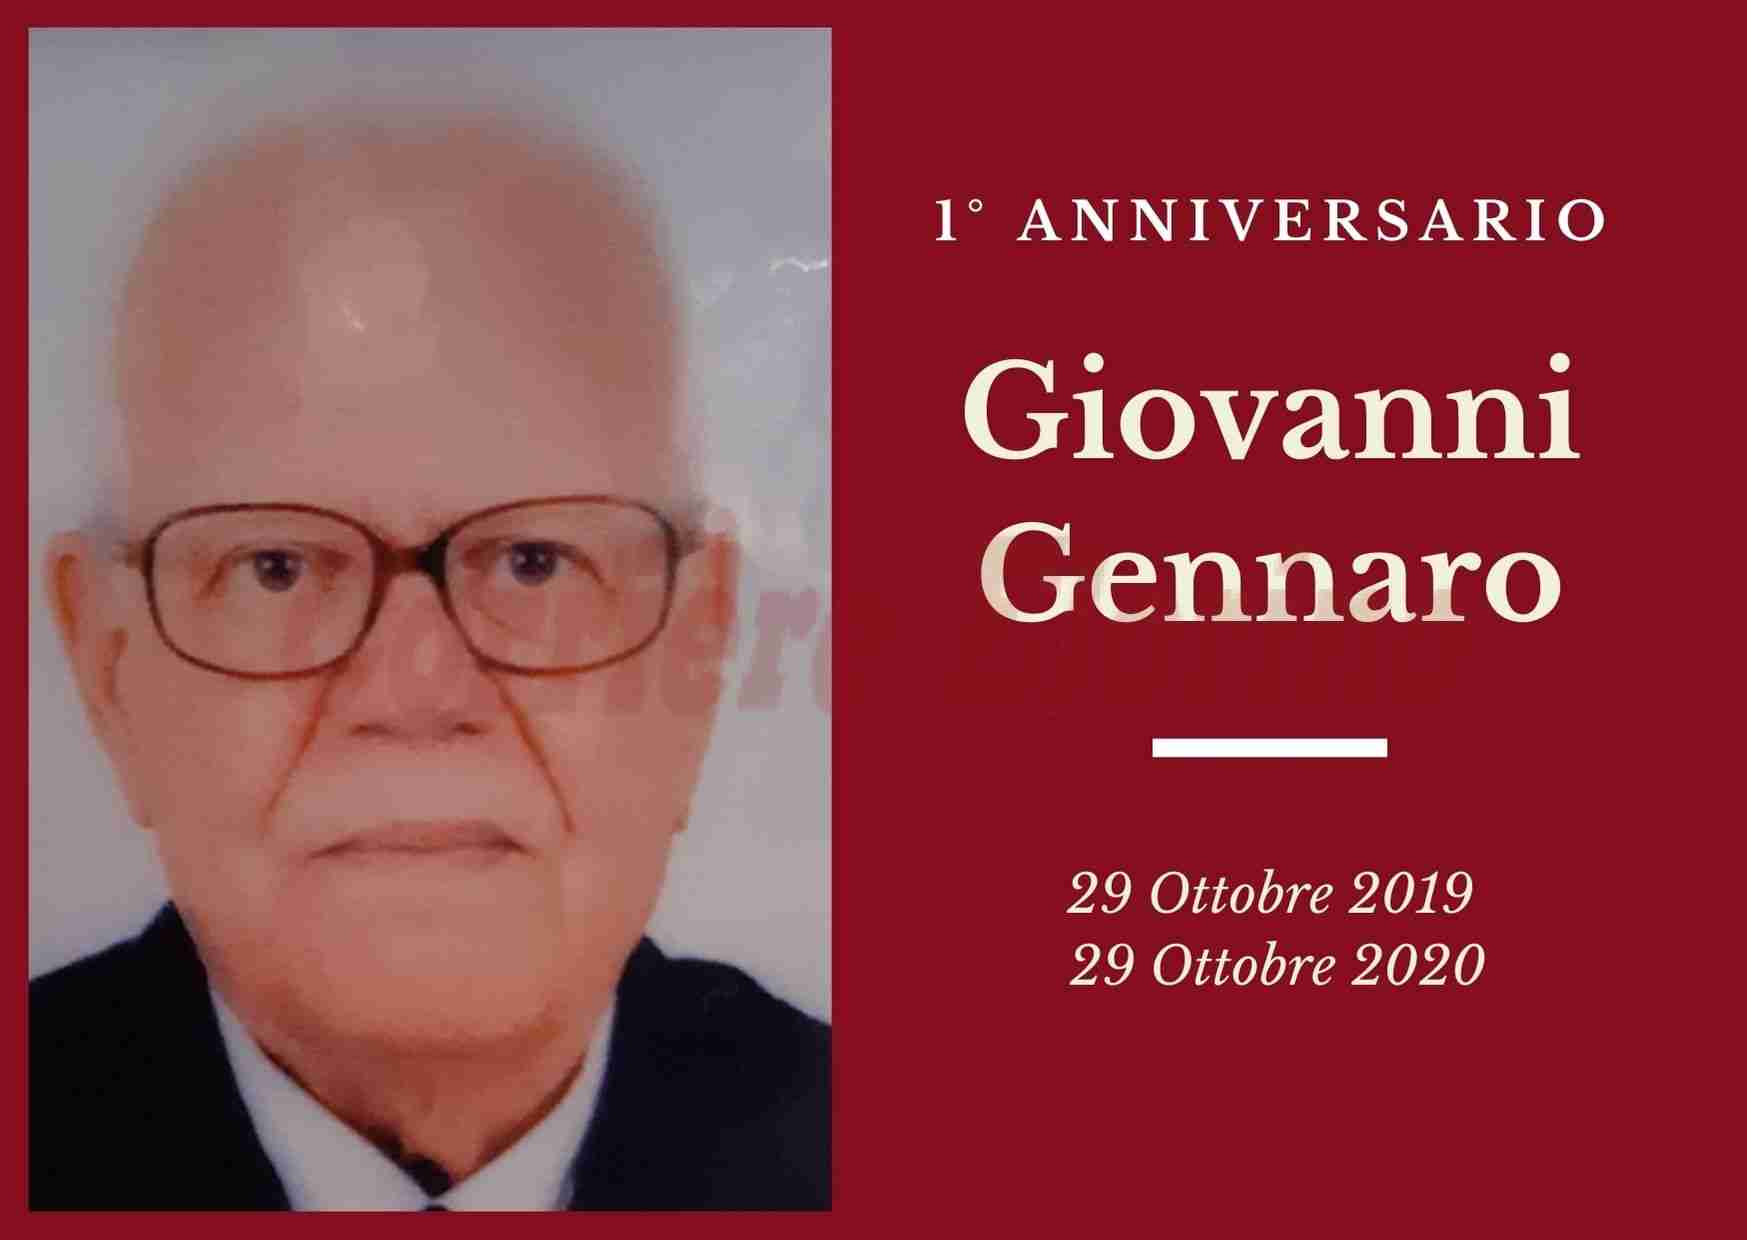 Necrologio: ricorre oggi il primo anniversario di Giovanni Gennaro